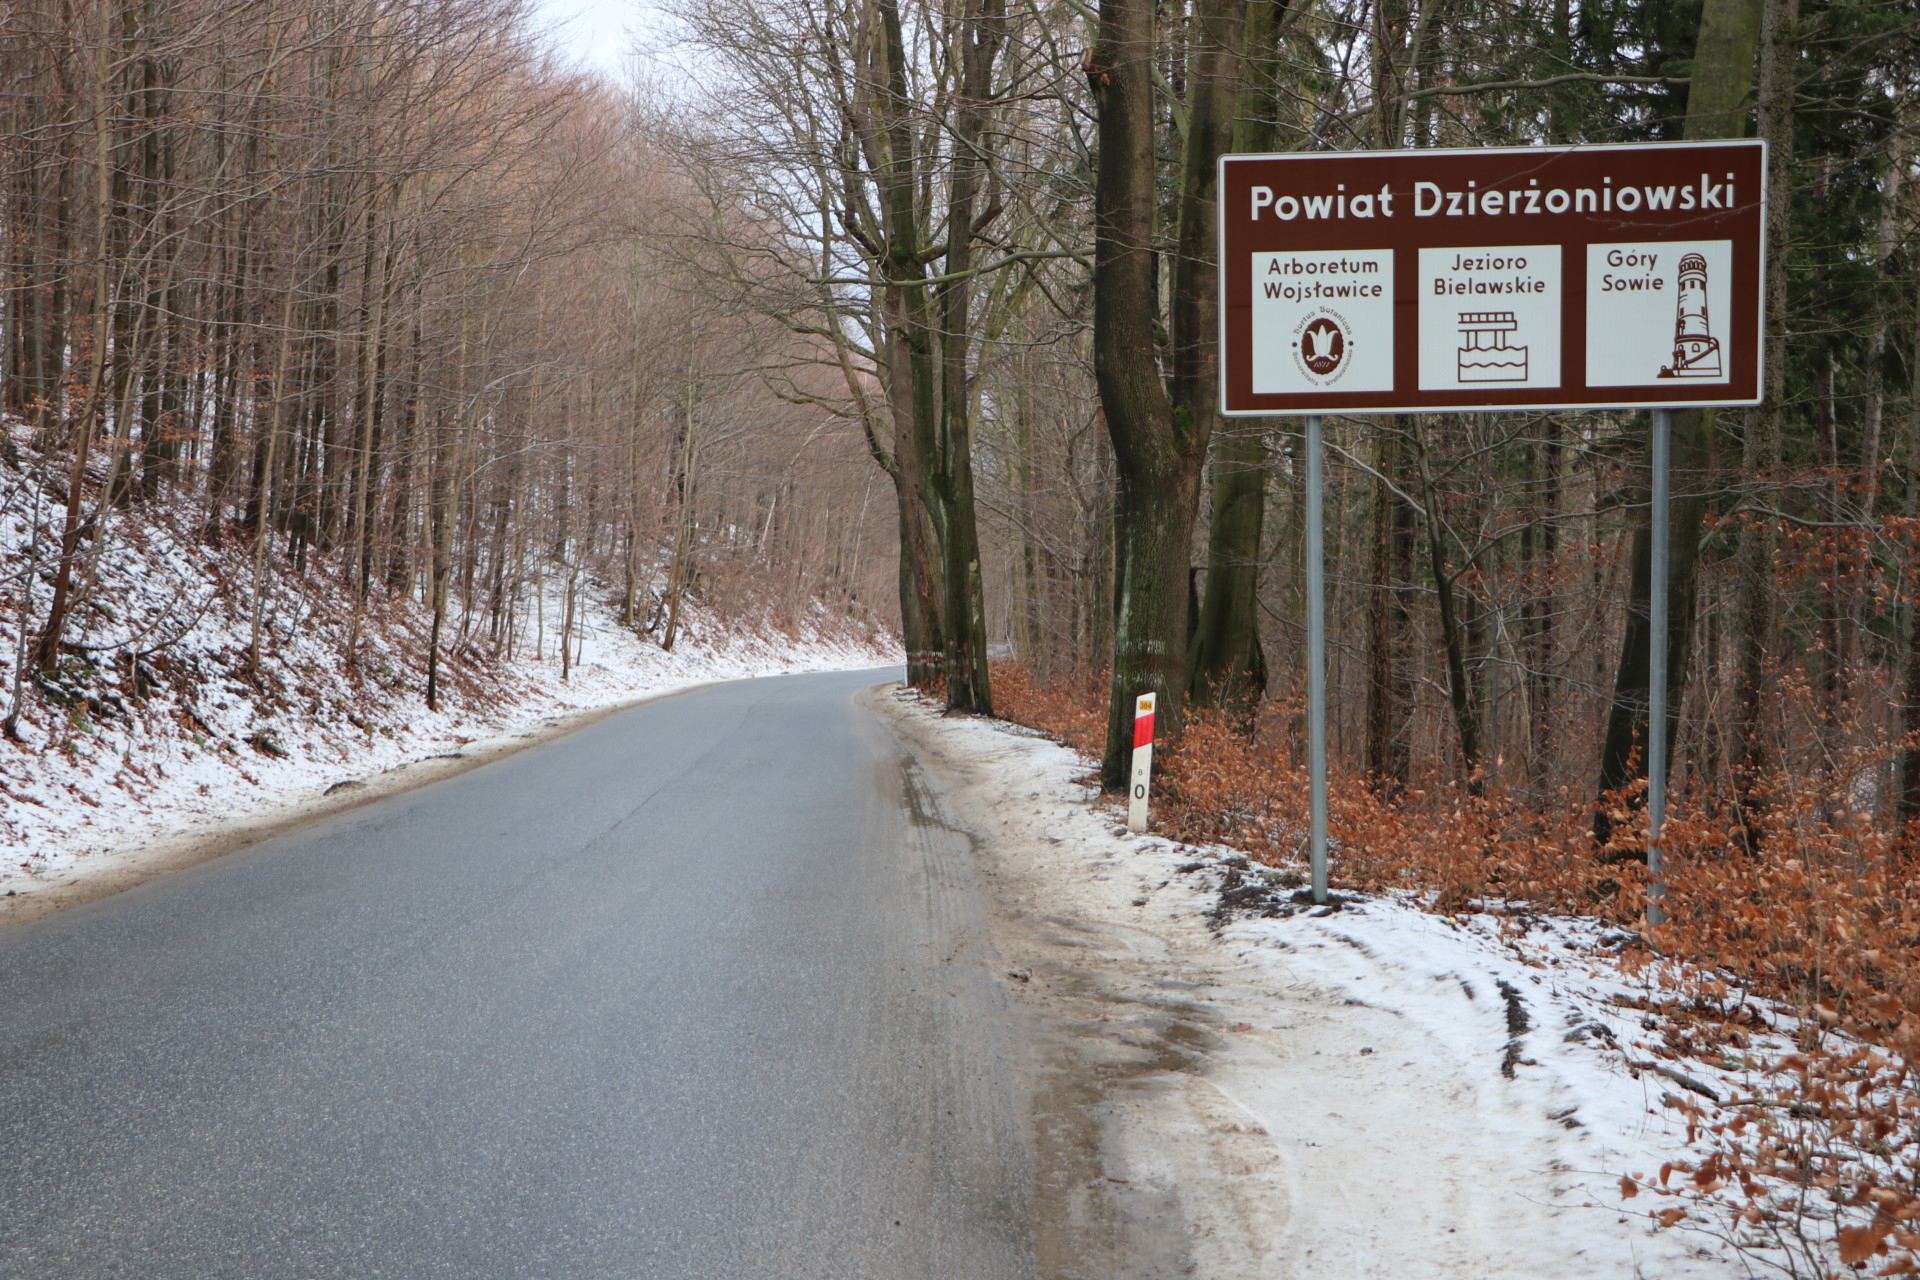 Droga dwupasmowa w górach, na poboczach śnieg, a po prawej stronie tablica informacyjna.